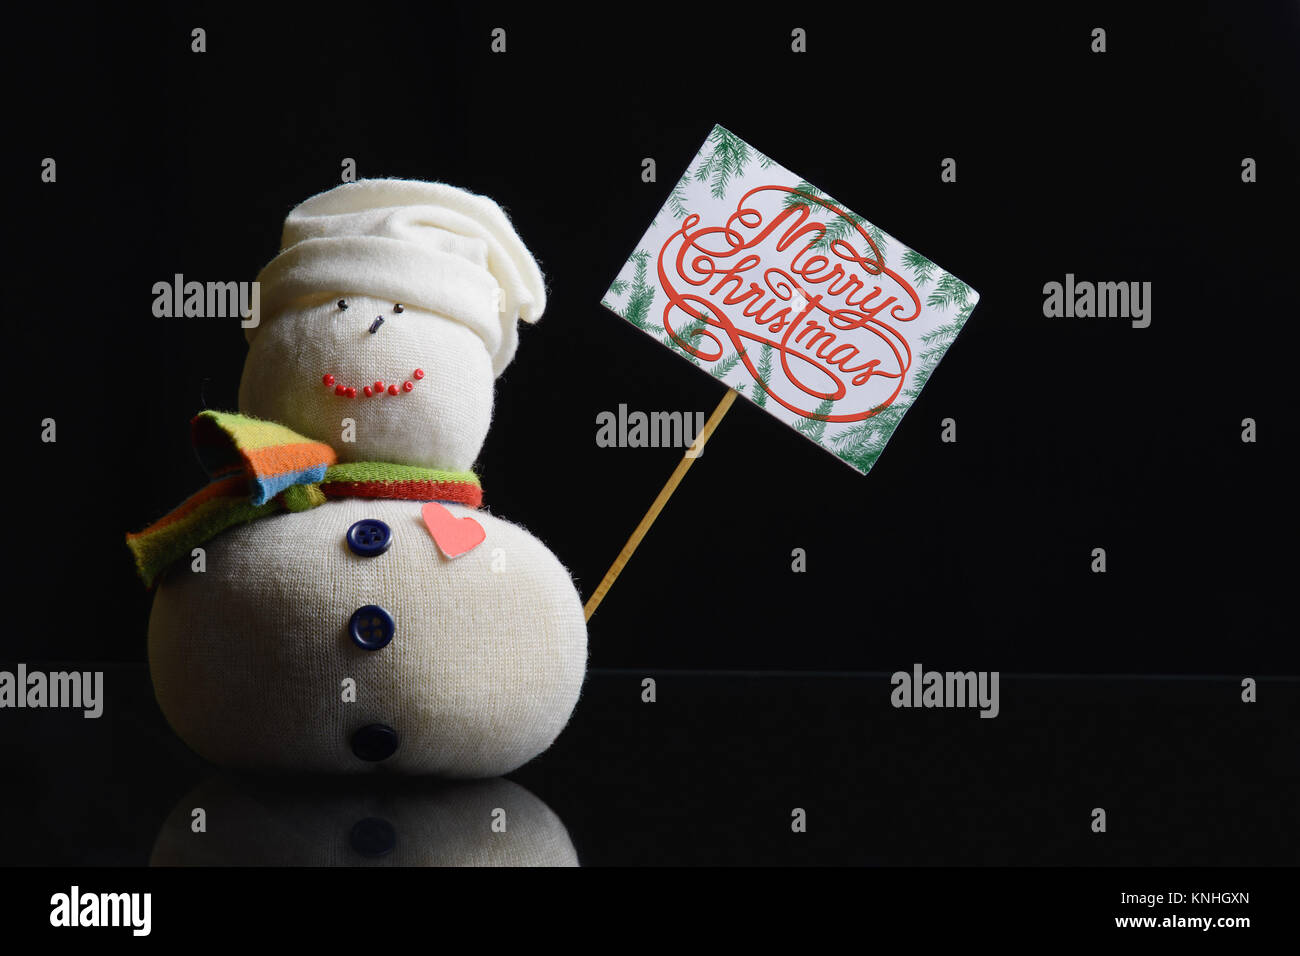 Pupazzo di neve figura tenendo un cartello di cartone su un bastone con il testo "Buon Natale!" scritto su di esso, e circondato con rami di abete. Tasto basso fotografia. Foto Stock